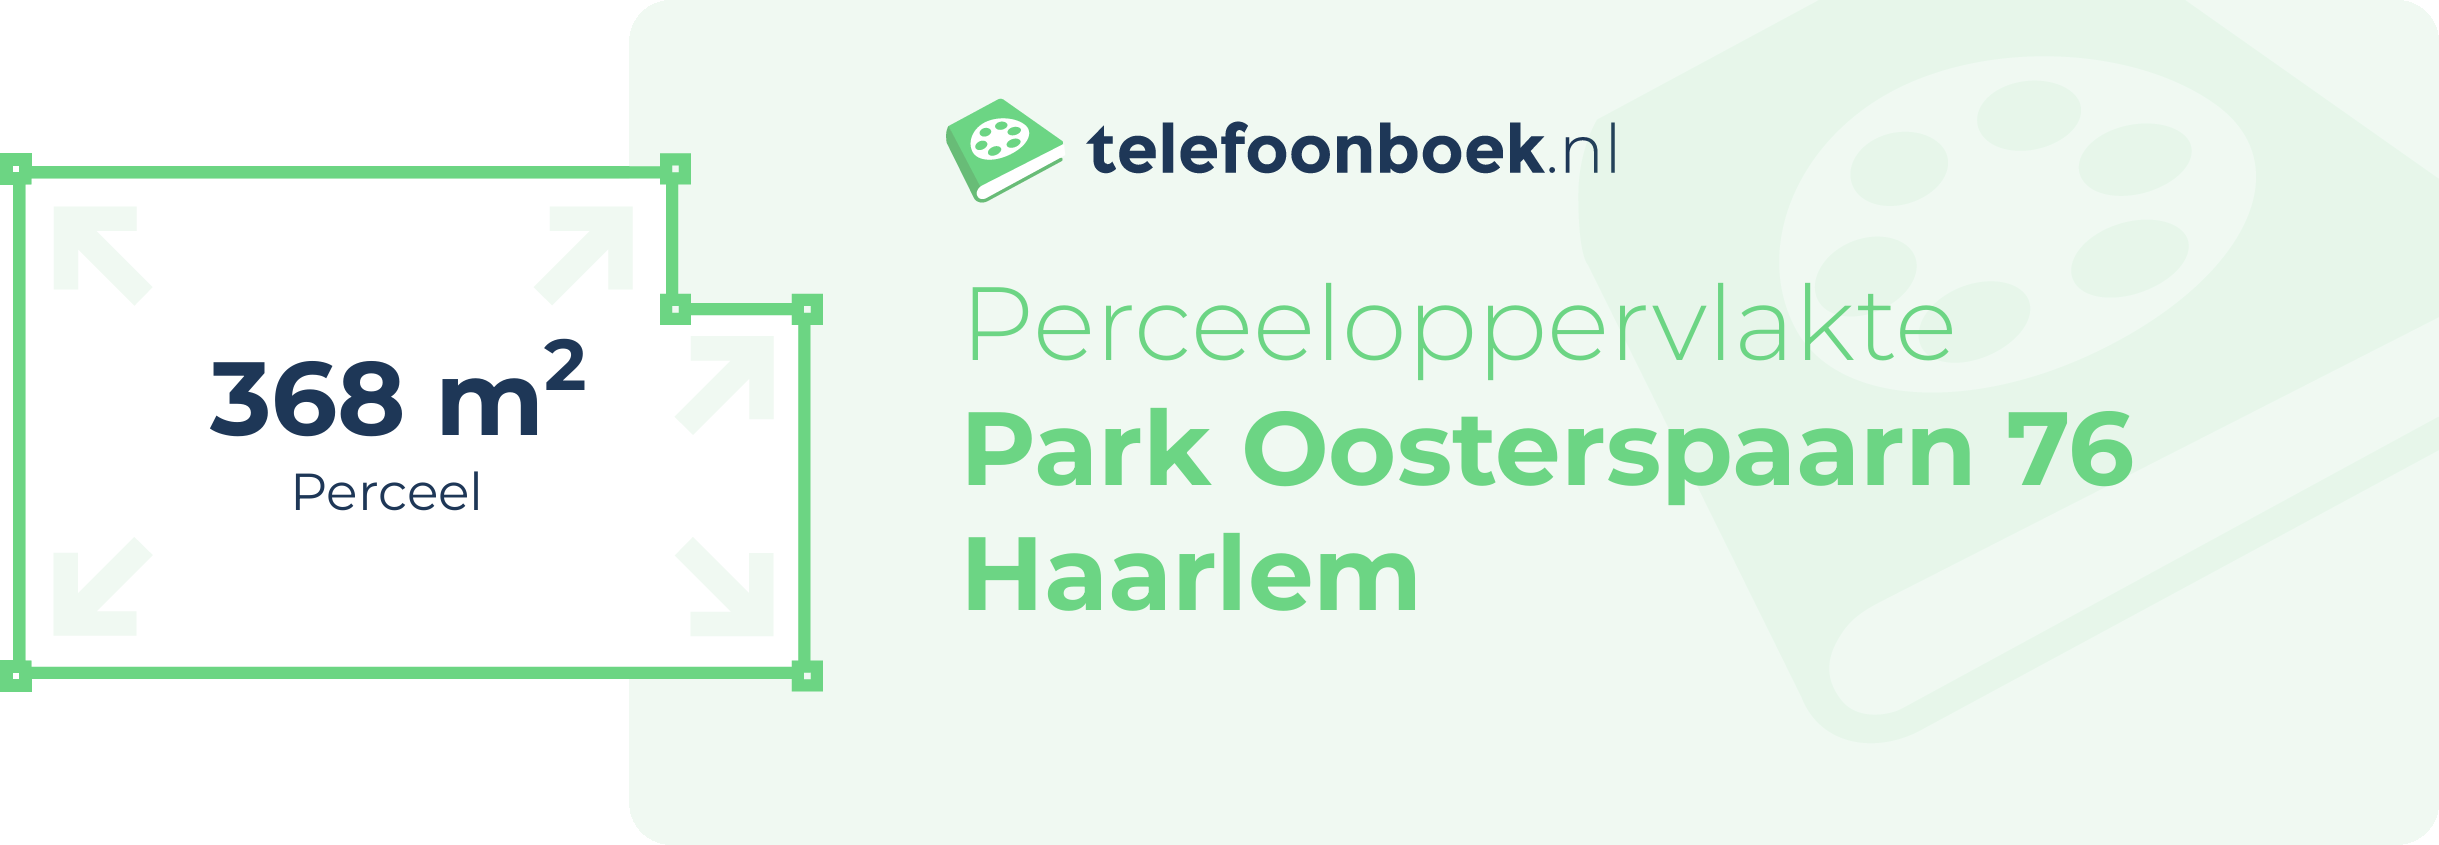 Perceeloppervlakte Park Oosterspaarn 76 Haarlem